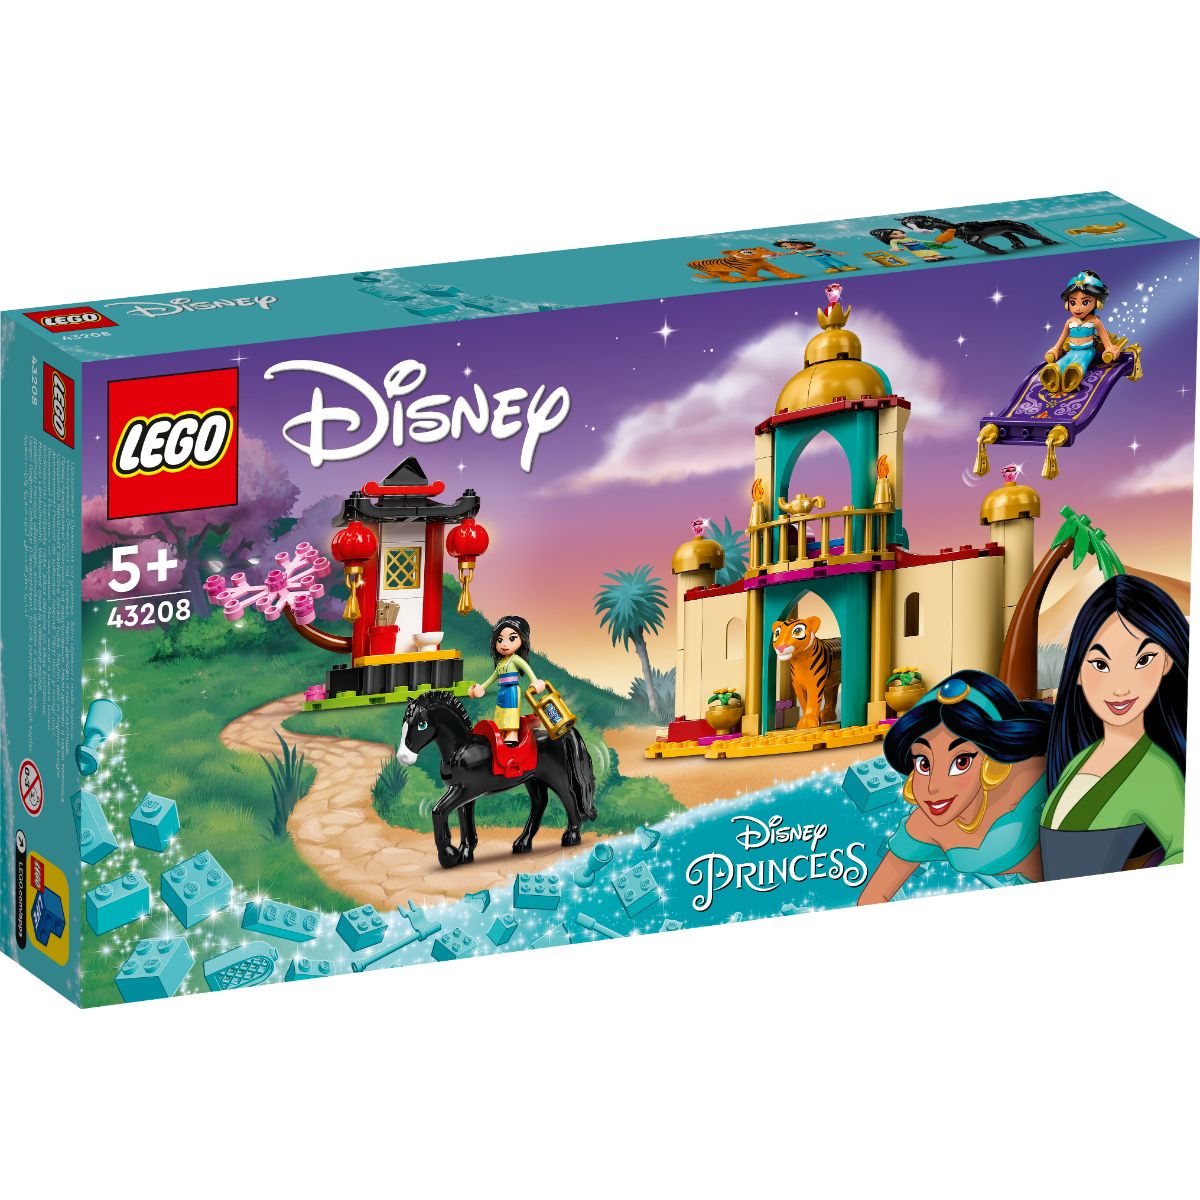 LEGO® Disney Princess – Aventura lui Jasmine si Mulan (43208) (43208)